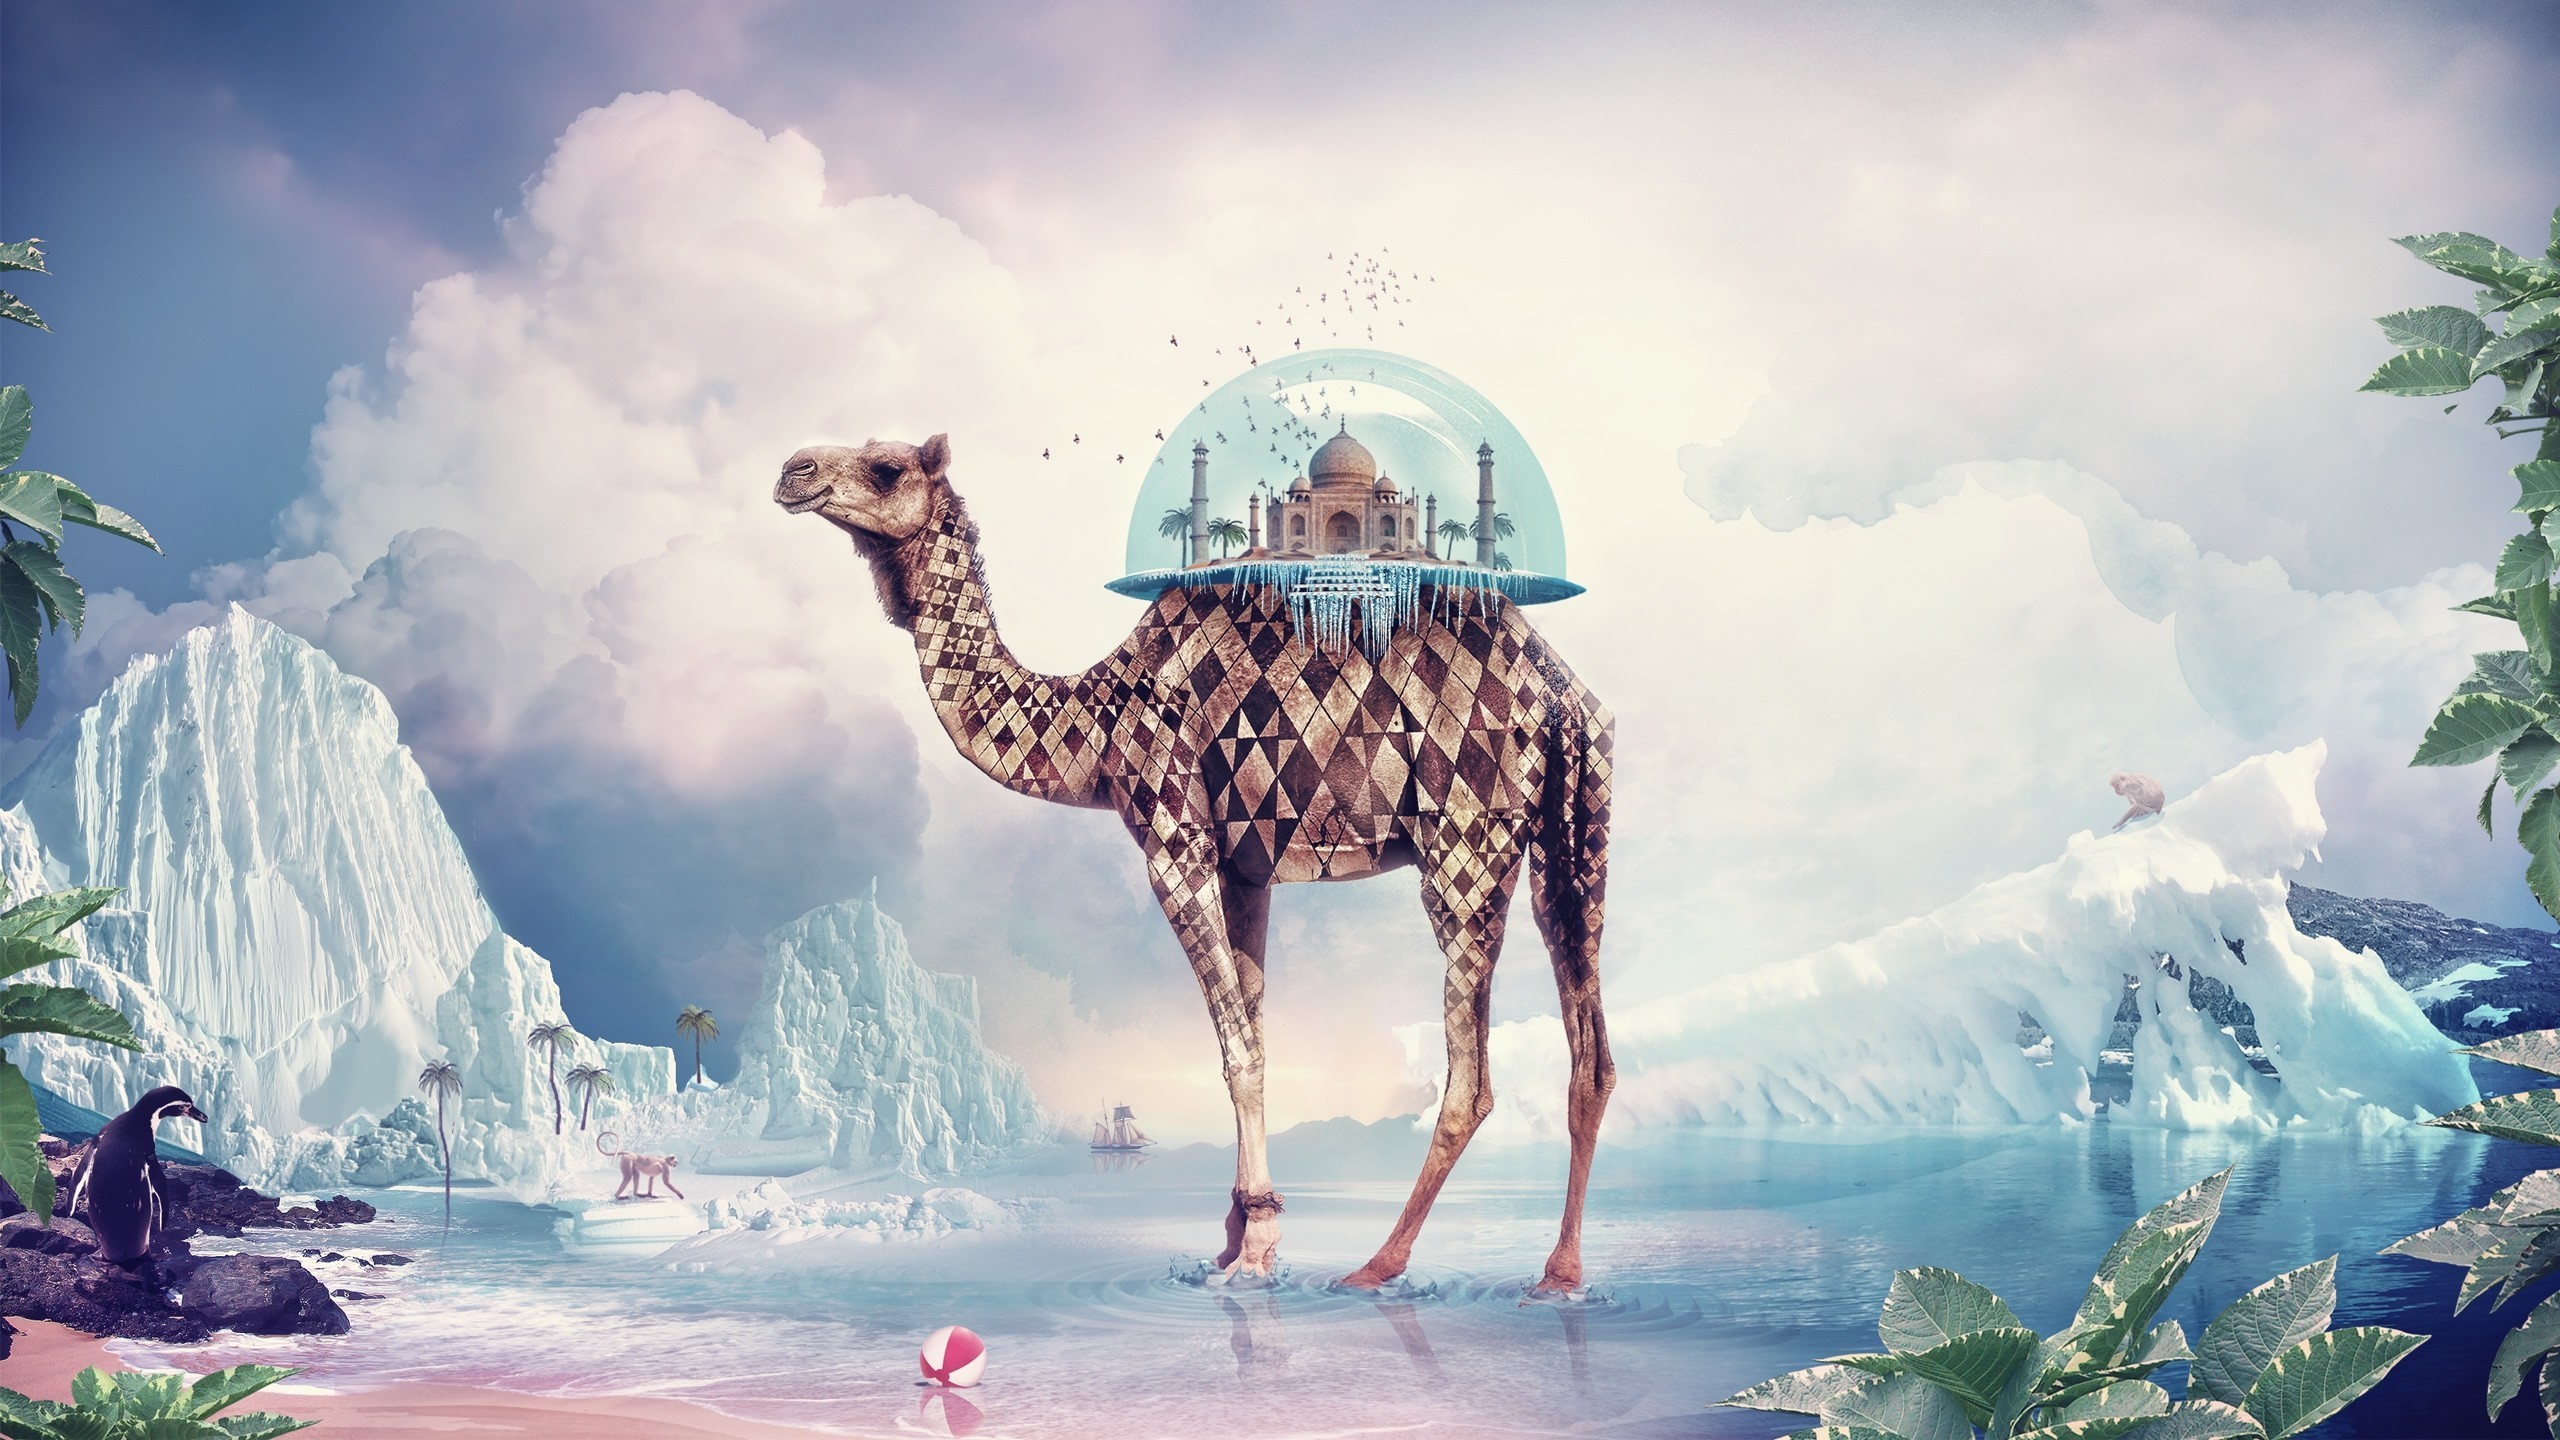 2560x1440 Taj mahal camels digital art surreal wallpaper